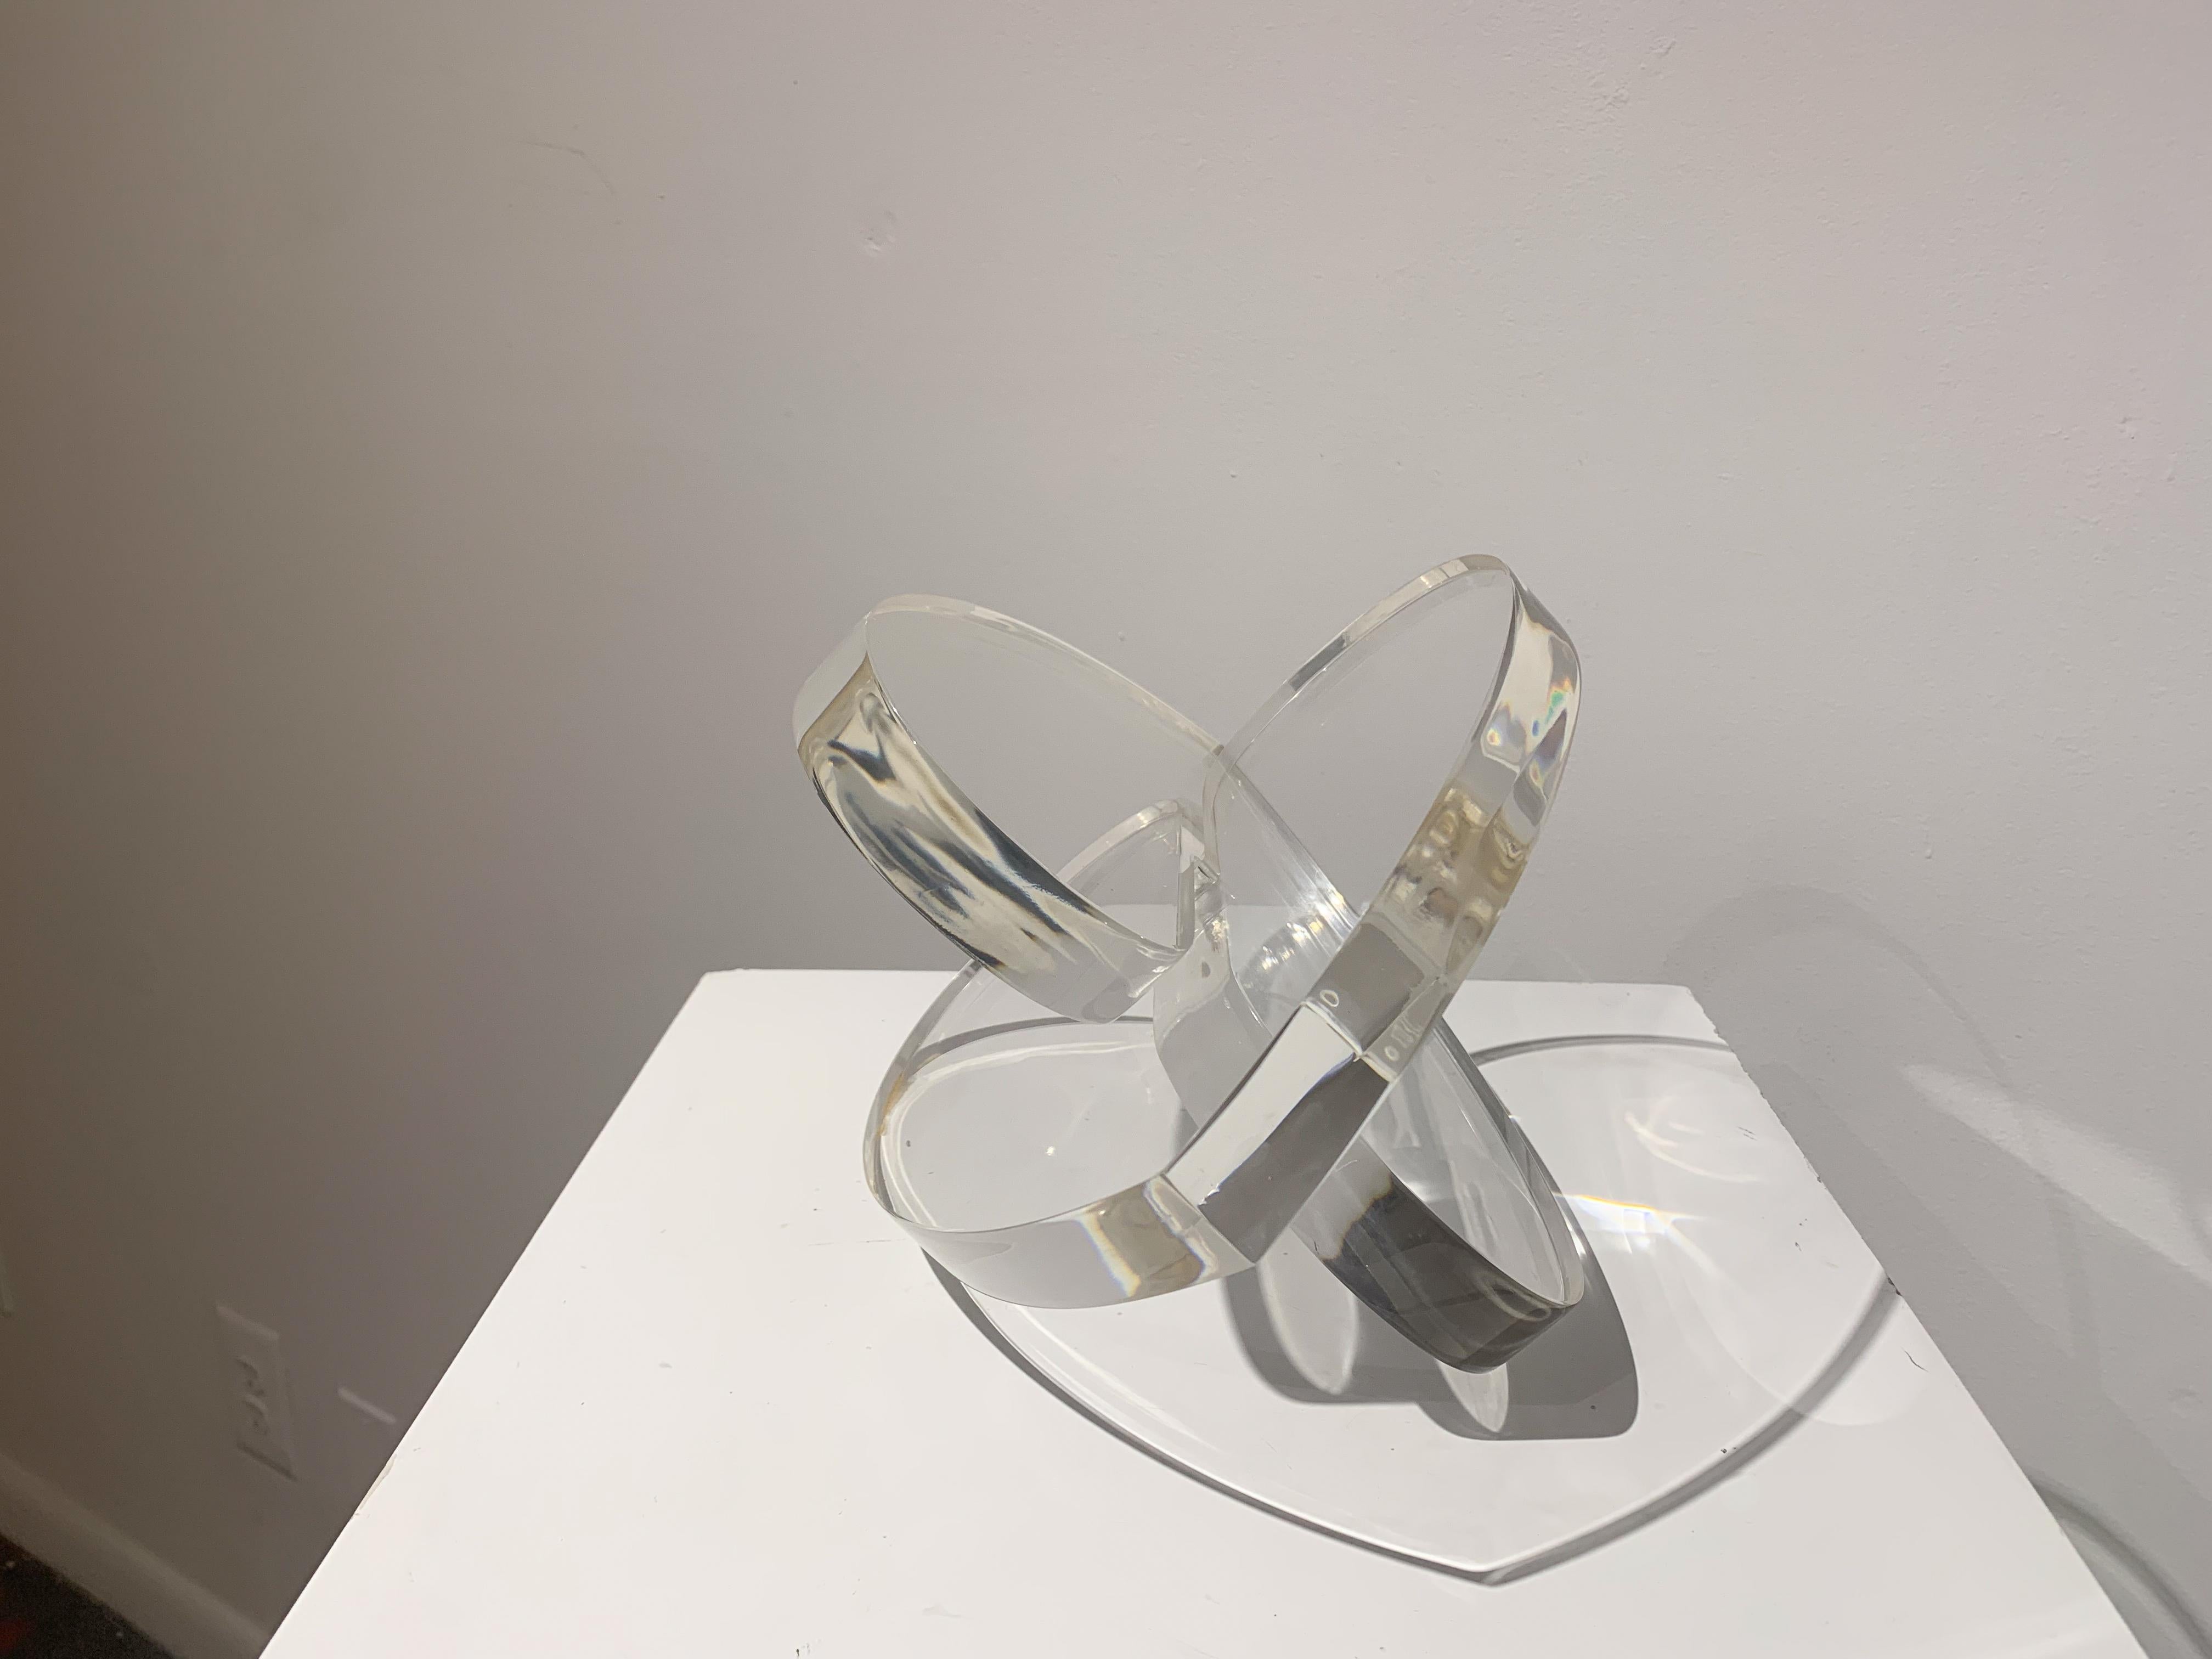 Michael Gitter, sculpteur américain, s'est forgé une identité artistique unique grâce à son utilisation magistrale de divers matériaux, notamment l'acier et l'acrylique, pour créer des œuvres d'art émotives et stylisées. Son portfolio témoigne de